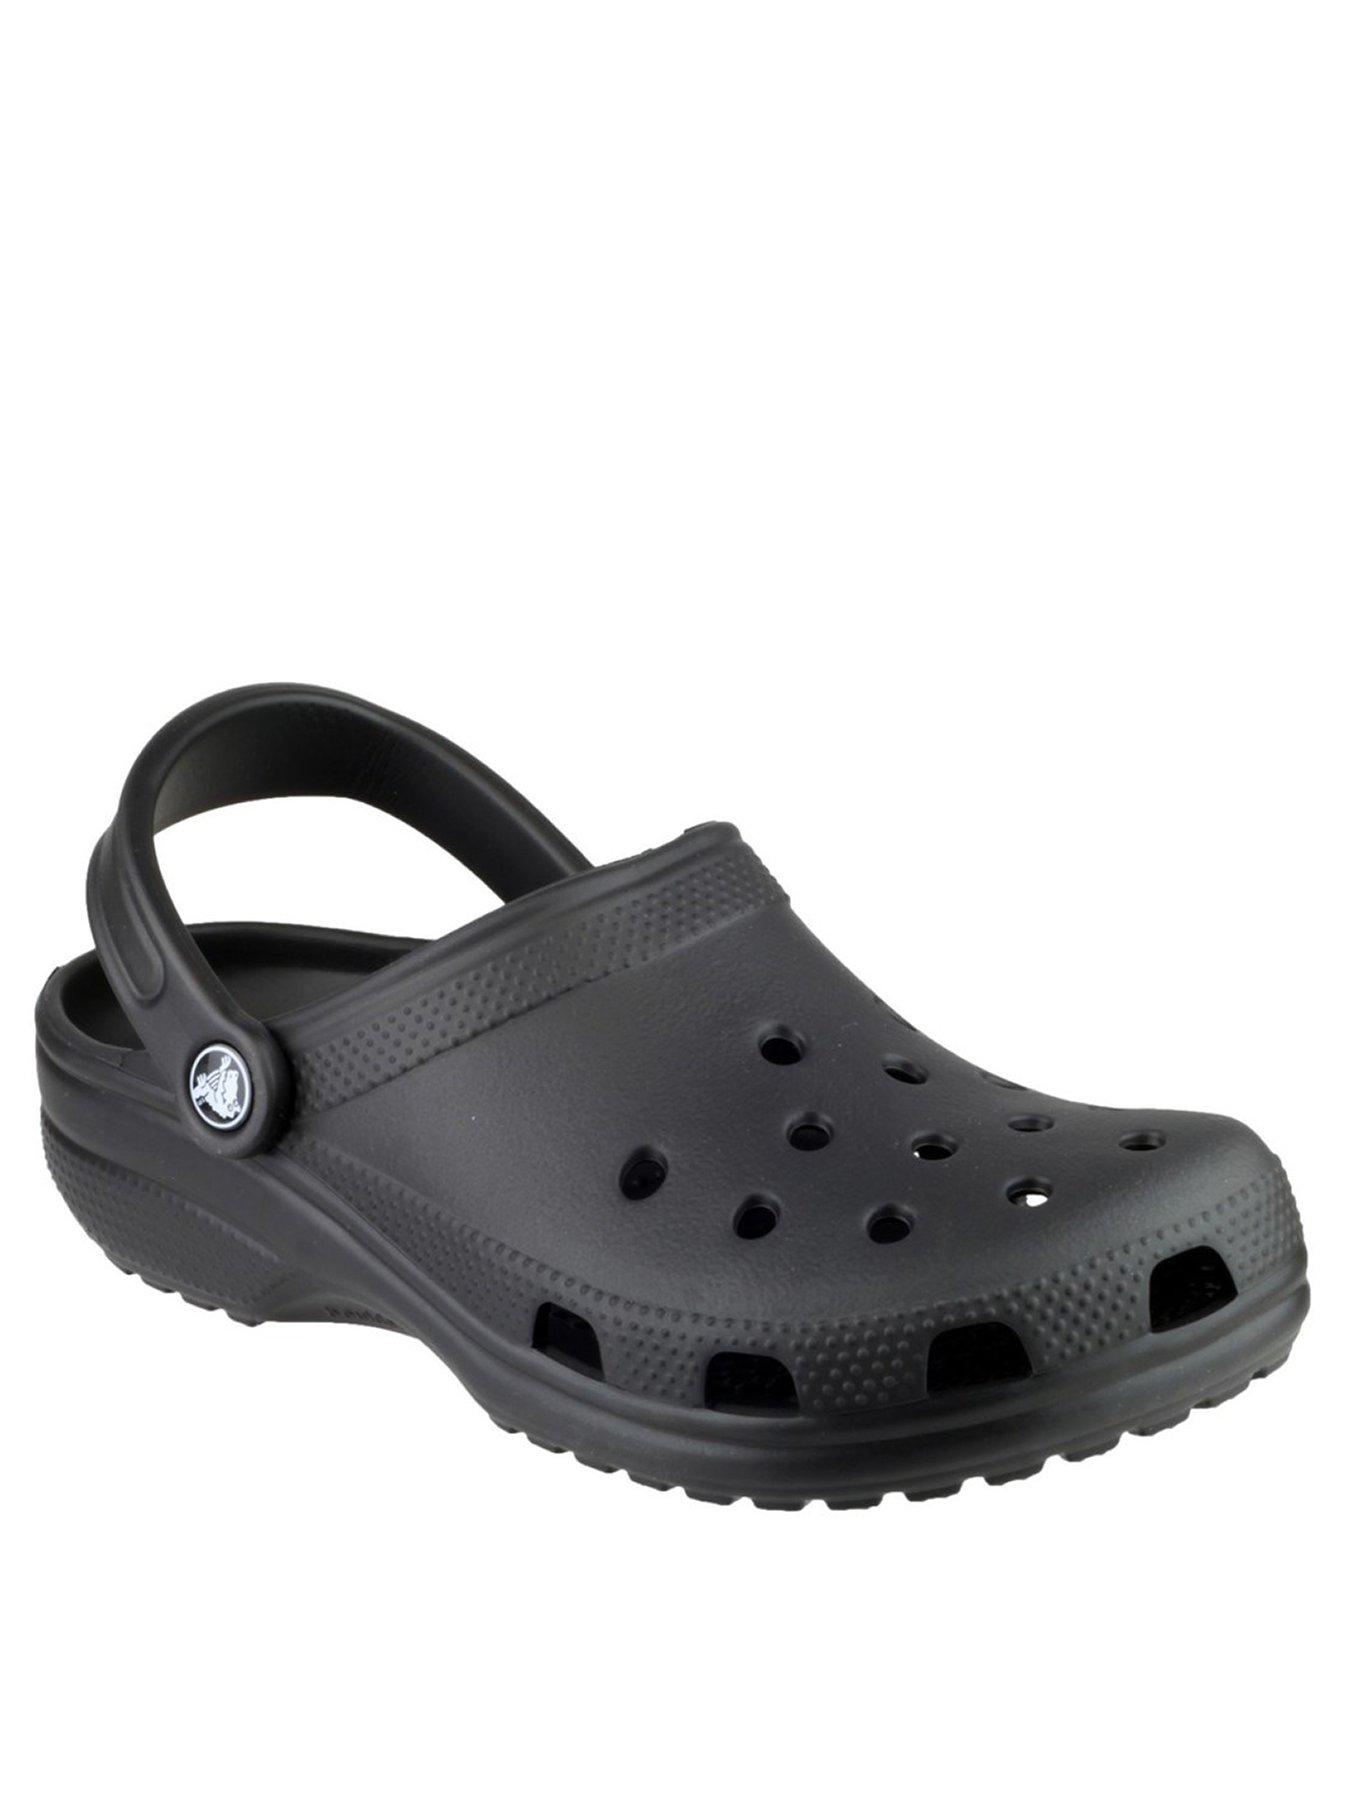 crocs flat sandals